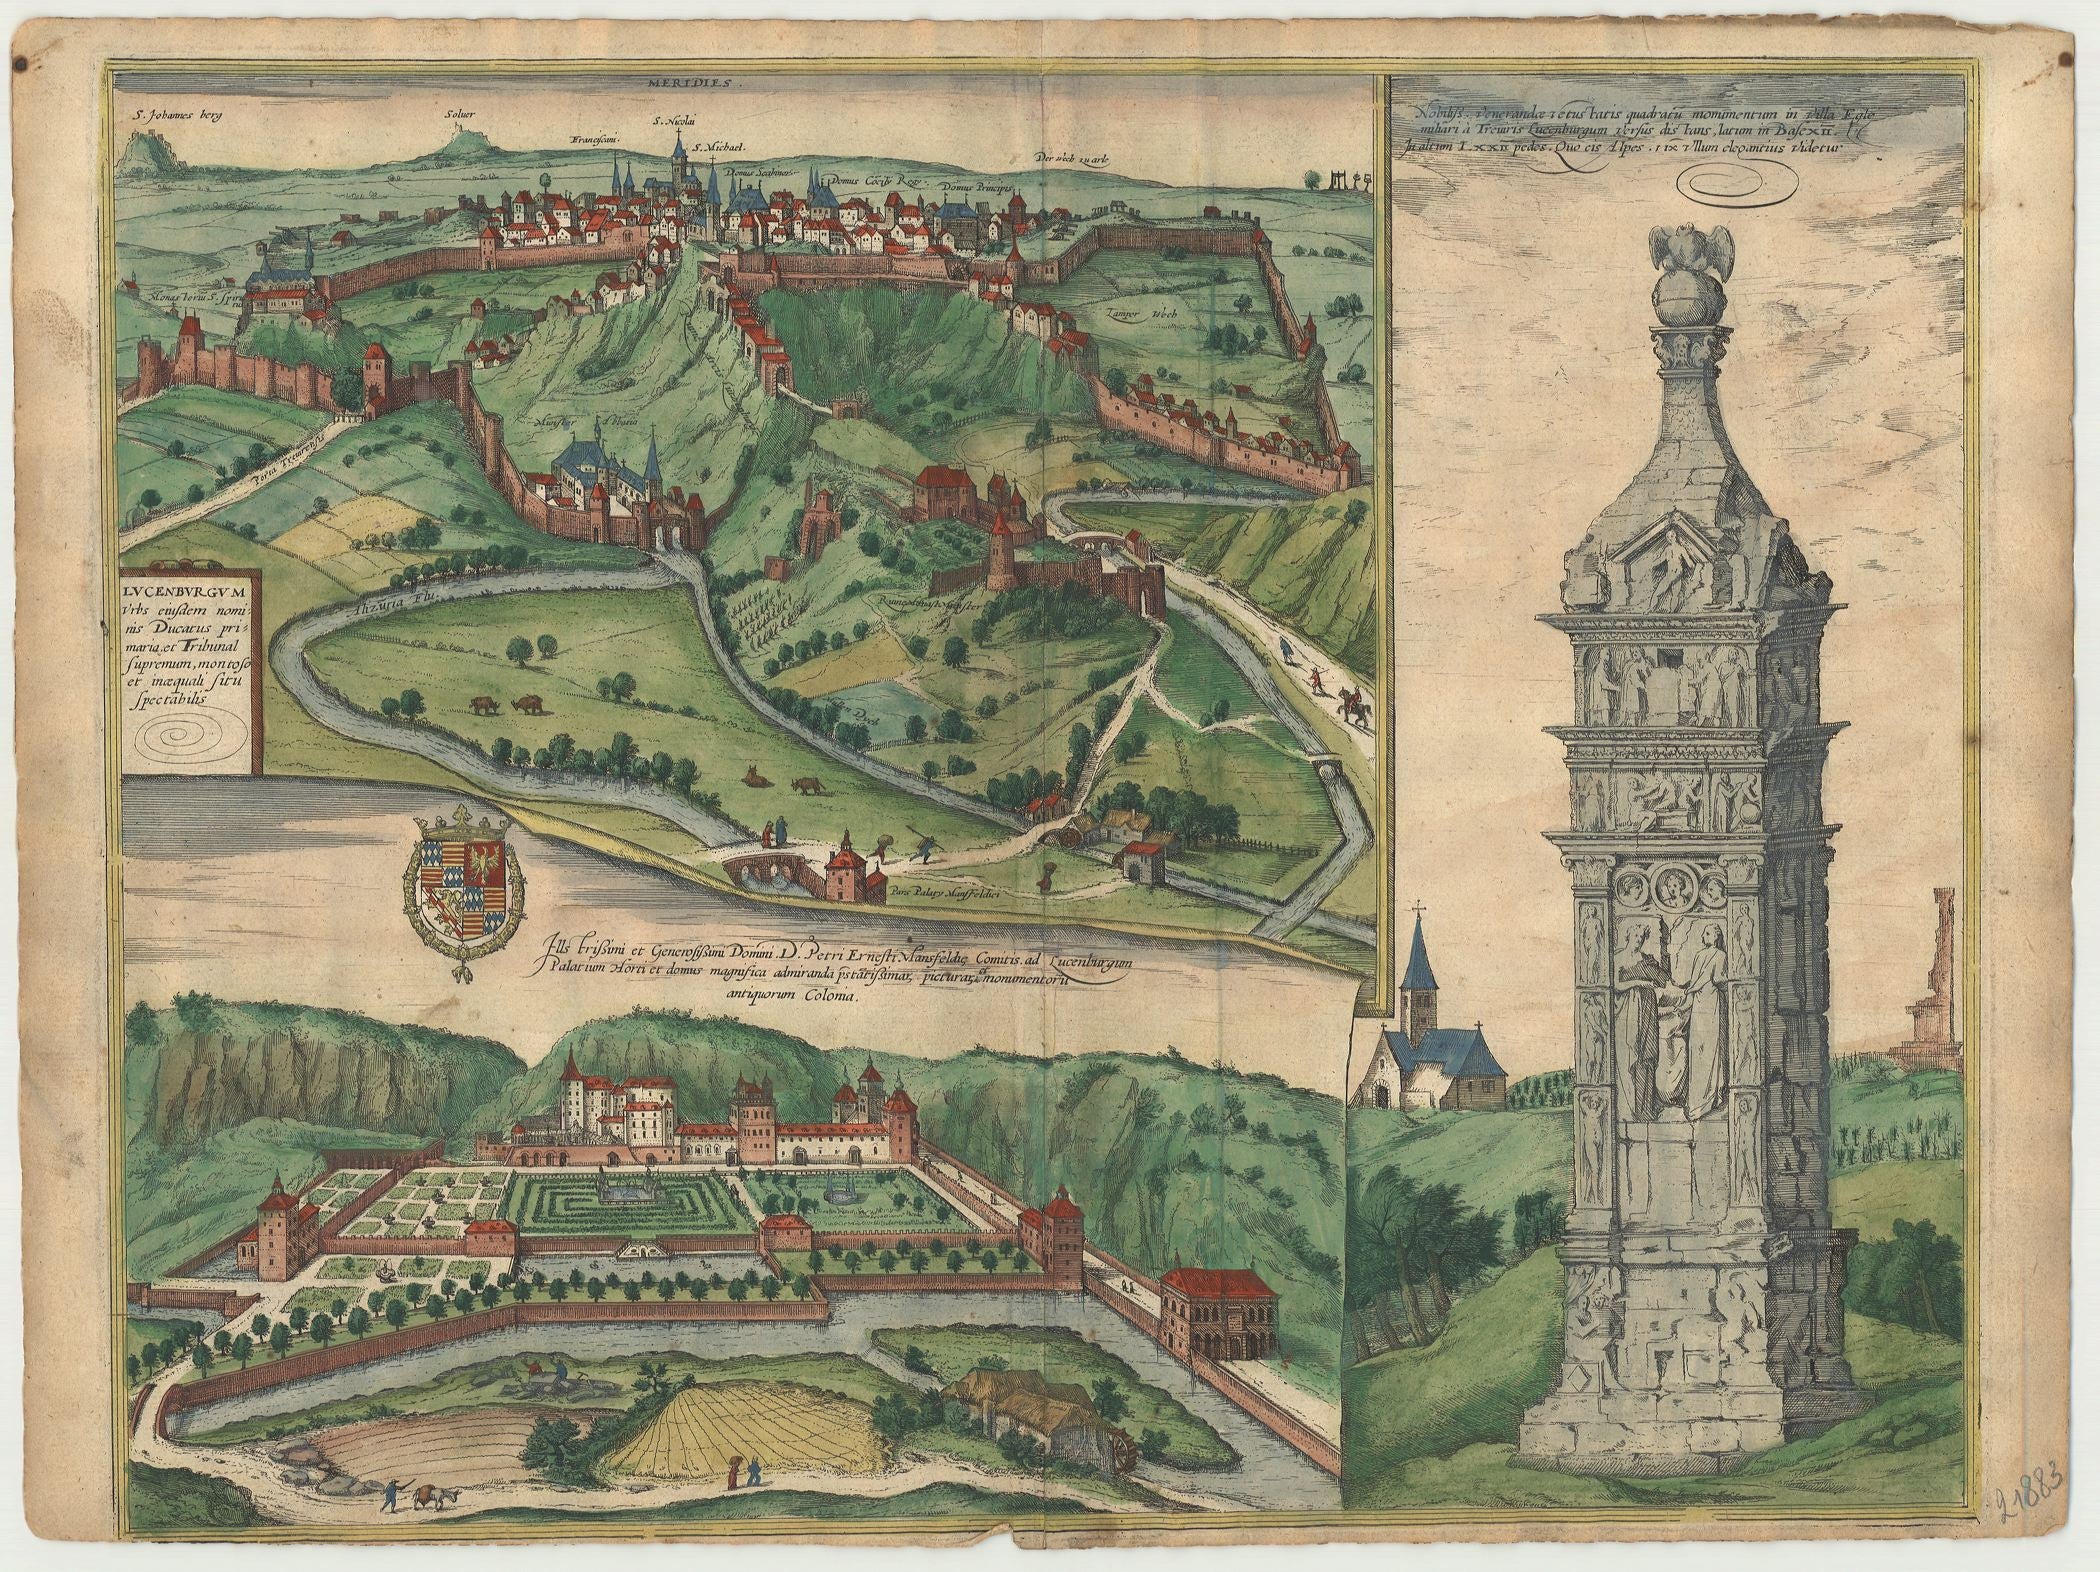 Luxemburg im Jahr 1598 von Georg Braun & Frans Hogenberg